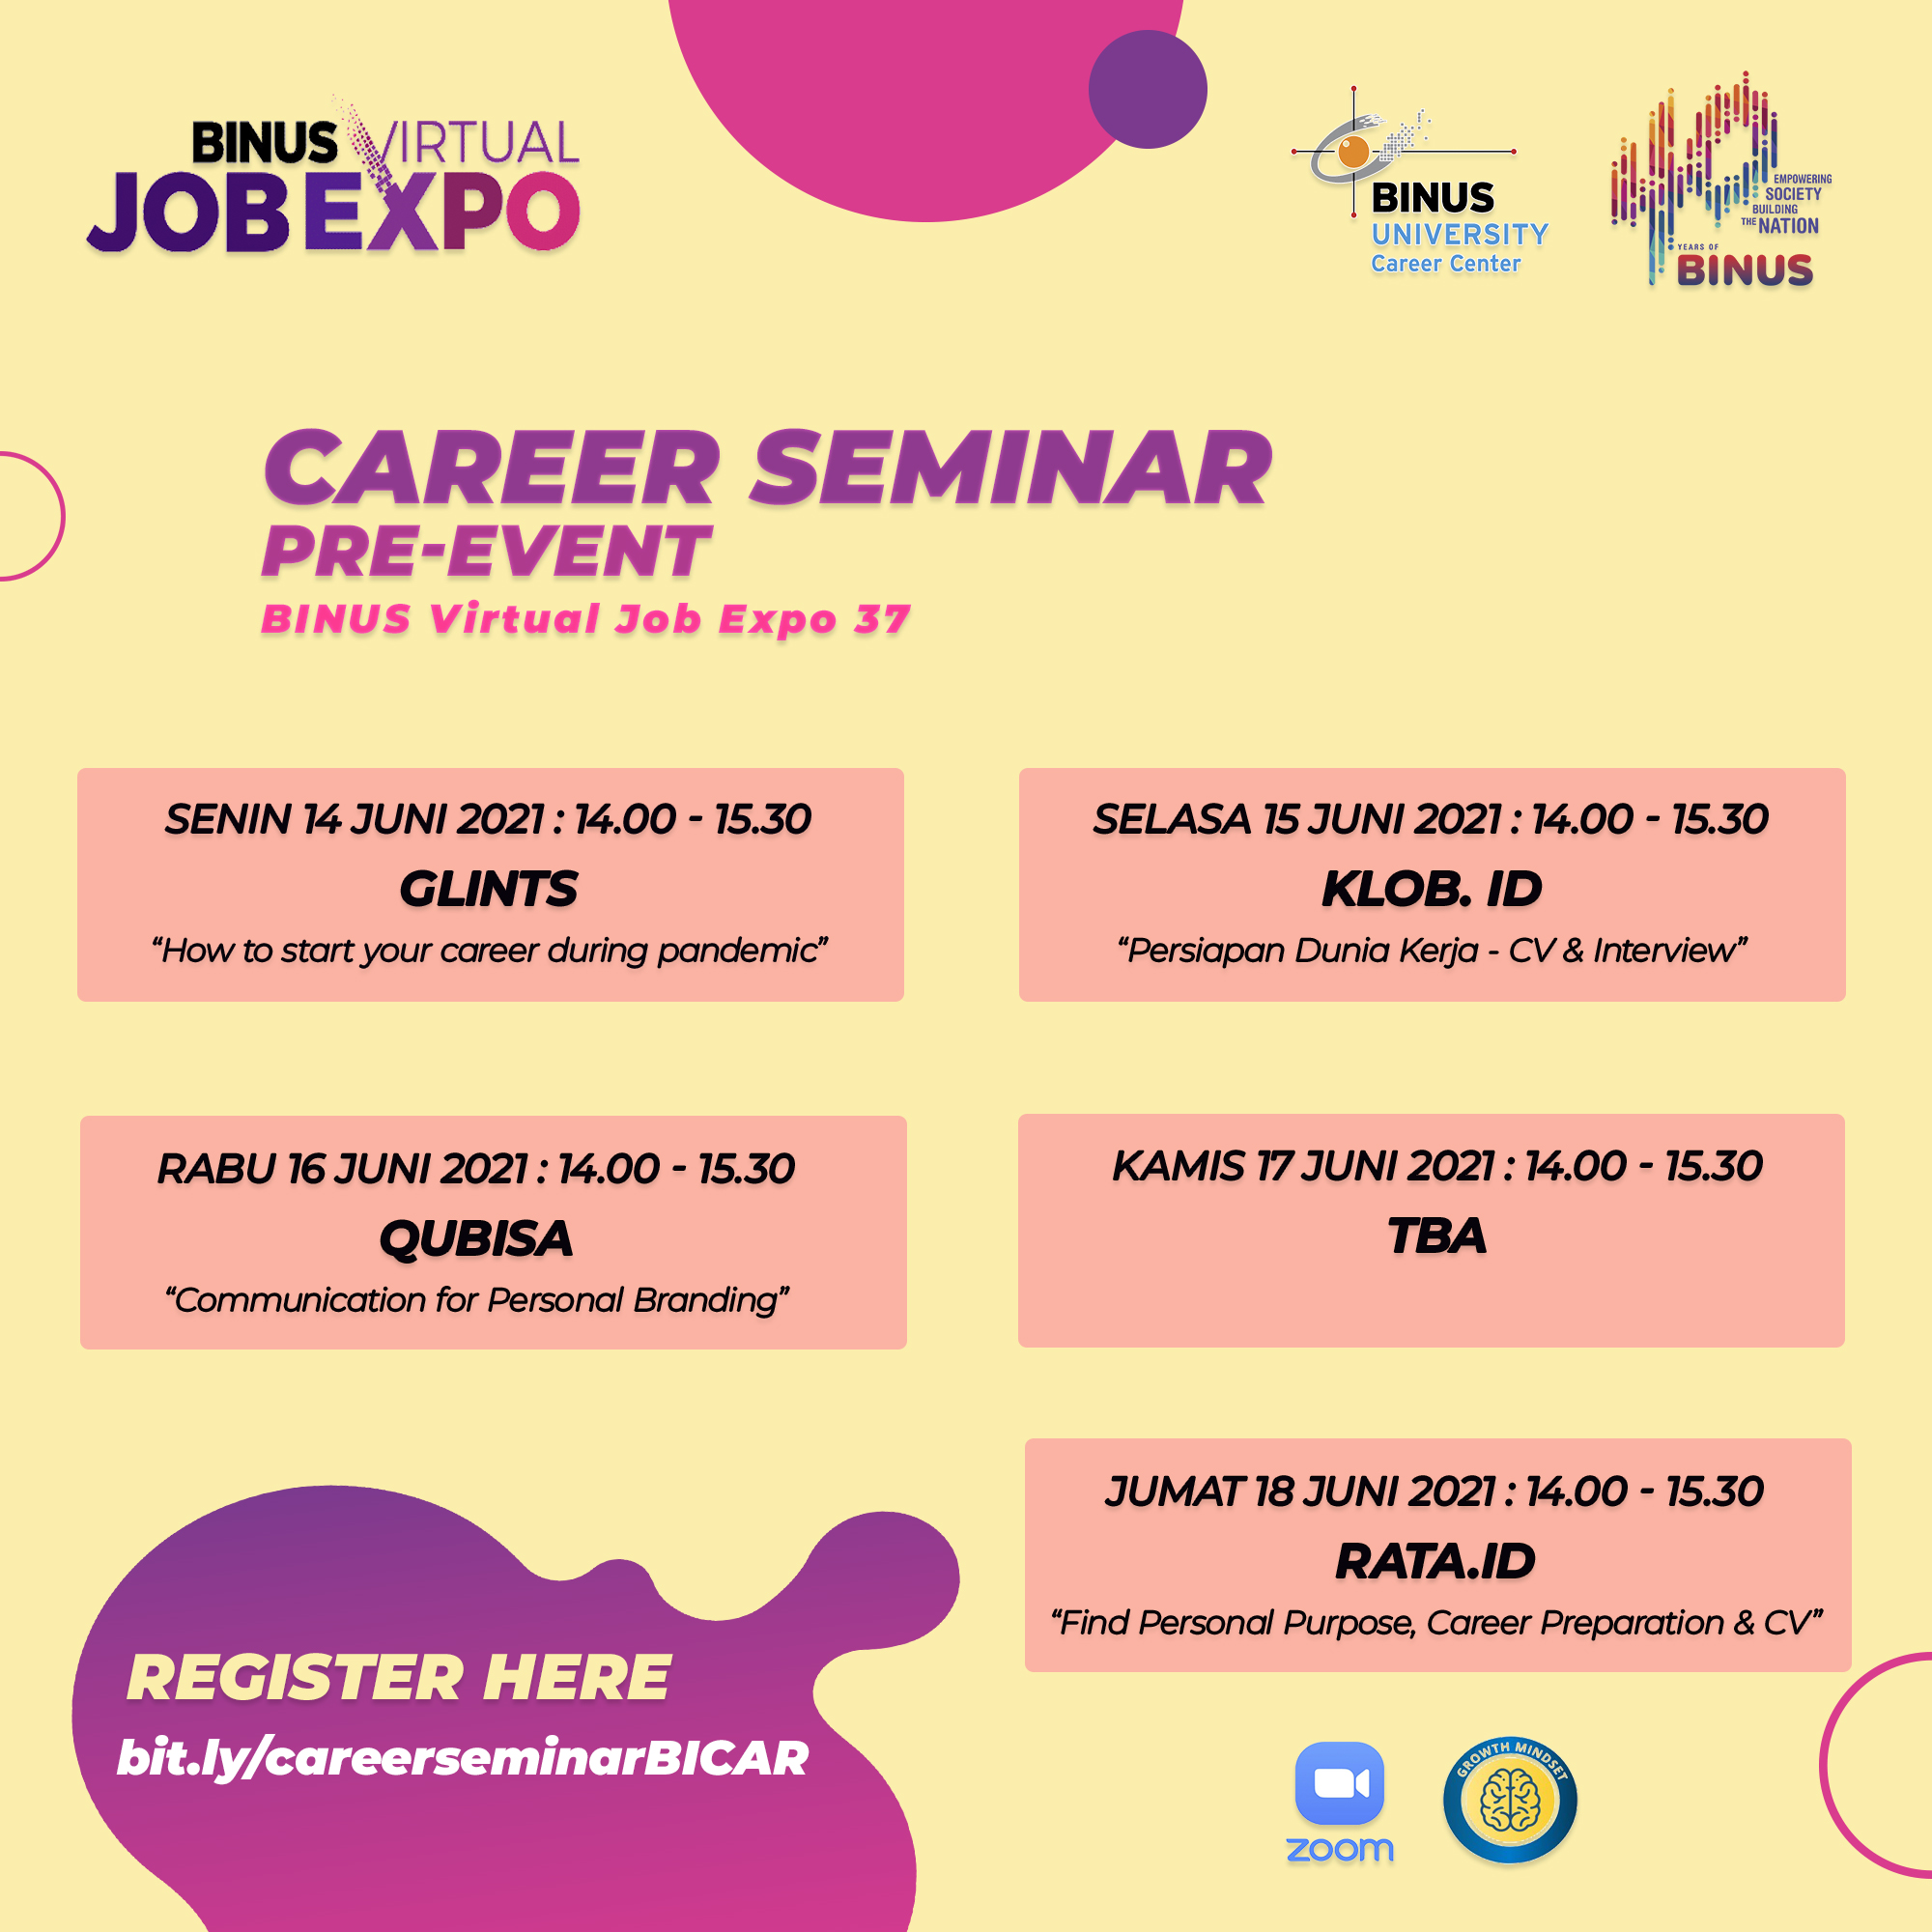 Pre-Event Career Seminar - Virtual Job Expo 37